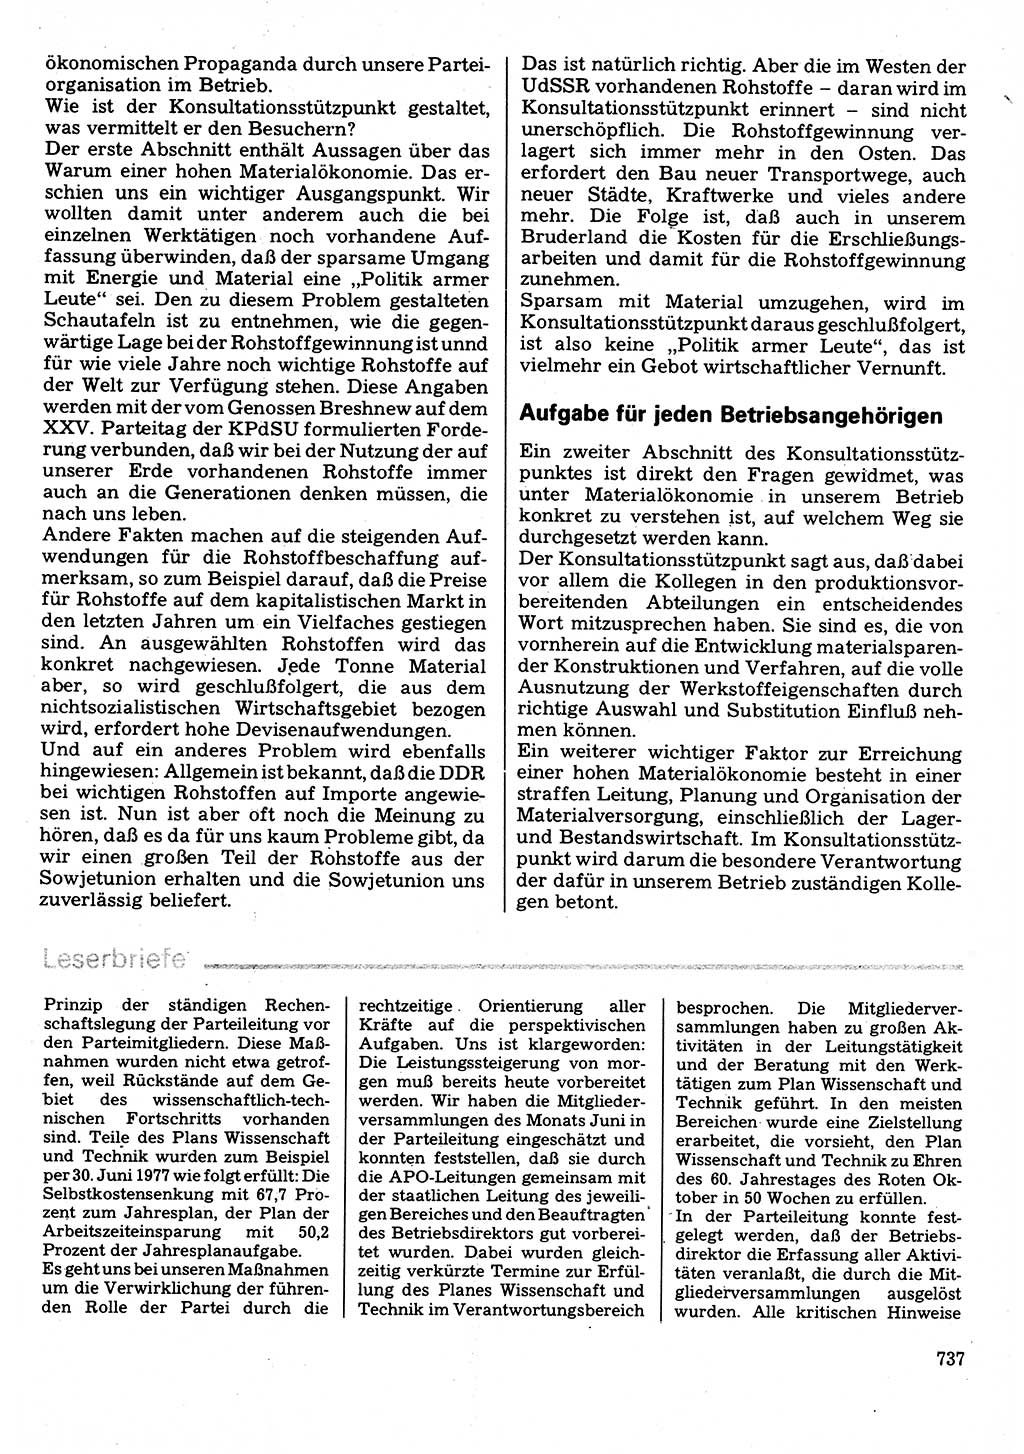 Neuer Weg (NW), Organ des Zentralkomitees (ZK) der SED (Sozialistische Einheitspartei Deutschlands) für Fragen des Parteilebens, 32. Jahrgang [Deutsche Demokratische Republik (DDR)] 1977, Seite 737 (NW ZK SED DDR 1977, S. 737)